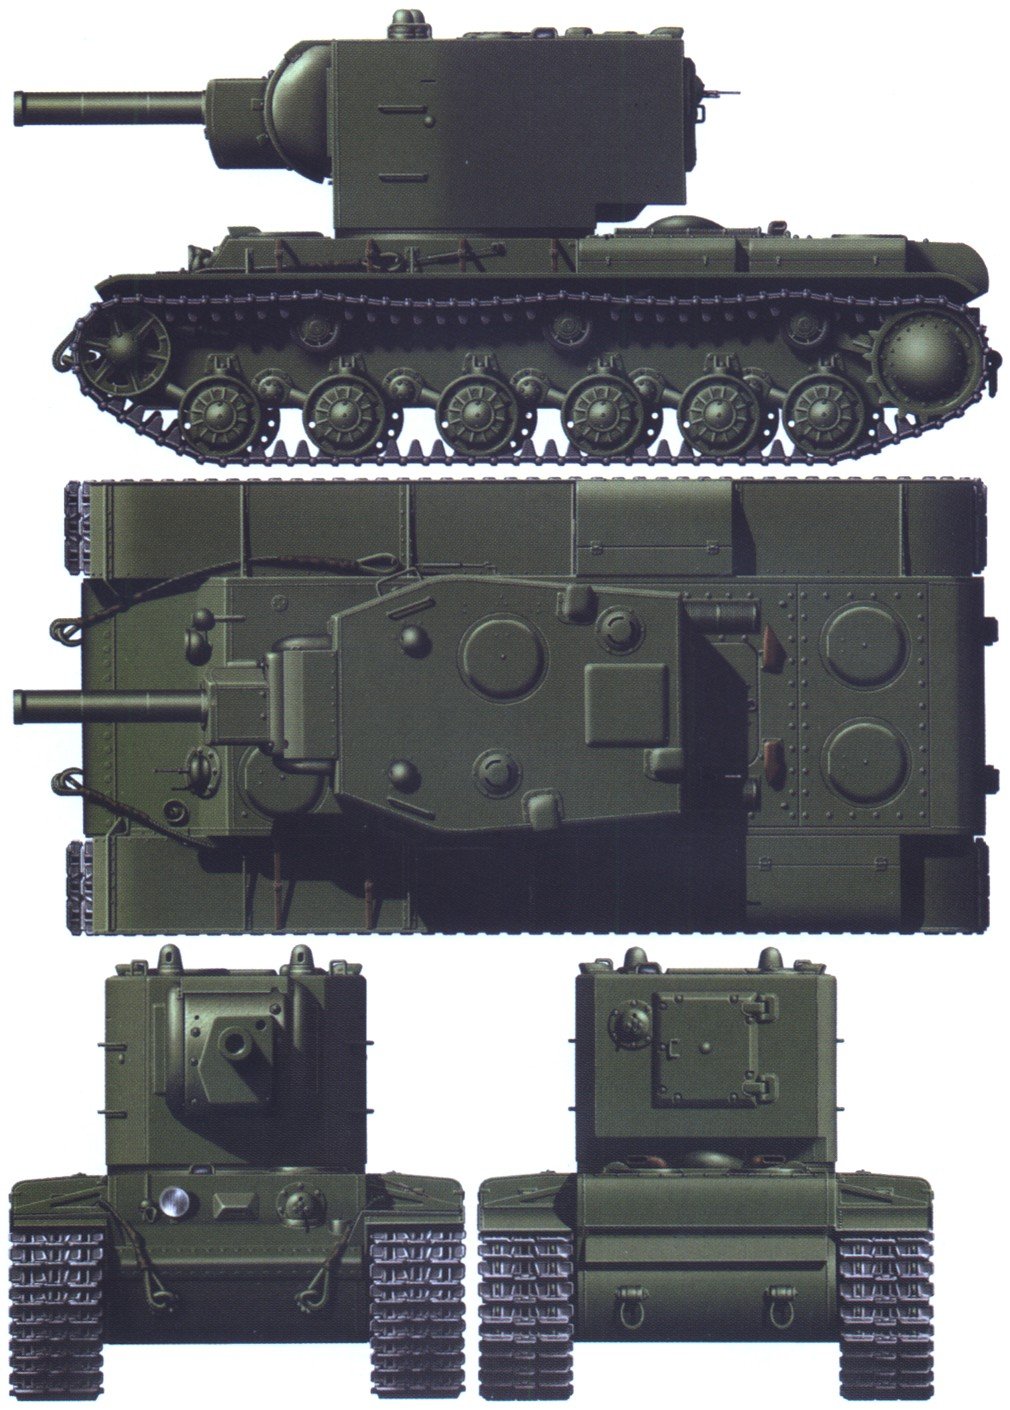 Кв-2 танк